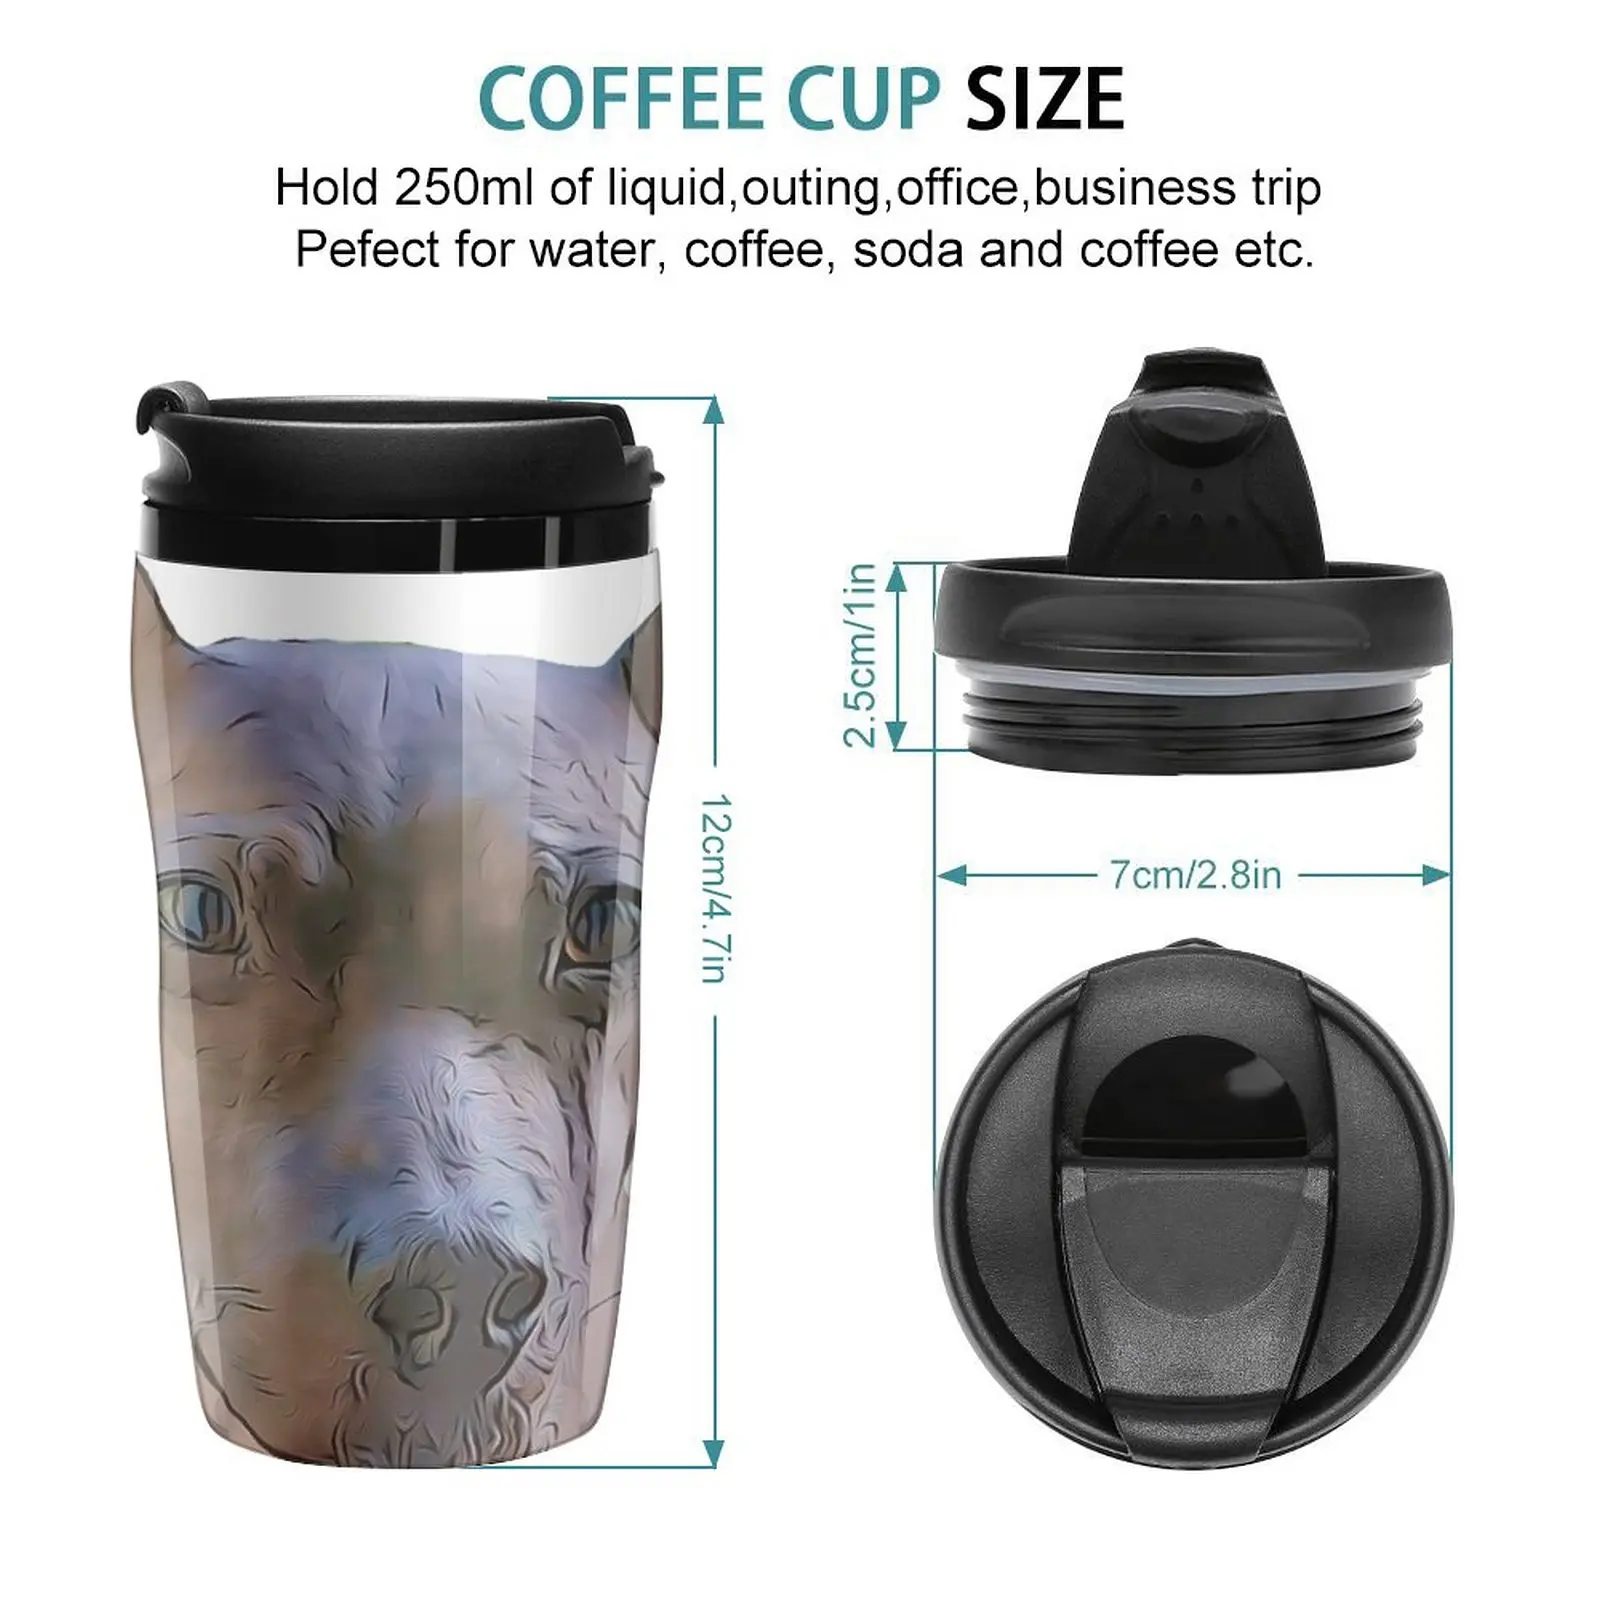 האמריקאי החדש שיער טרייר כלב מצויר עיצוב נסיעות ספל קפה קפה ותה קפה אביזר כוסות קפה - 1